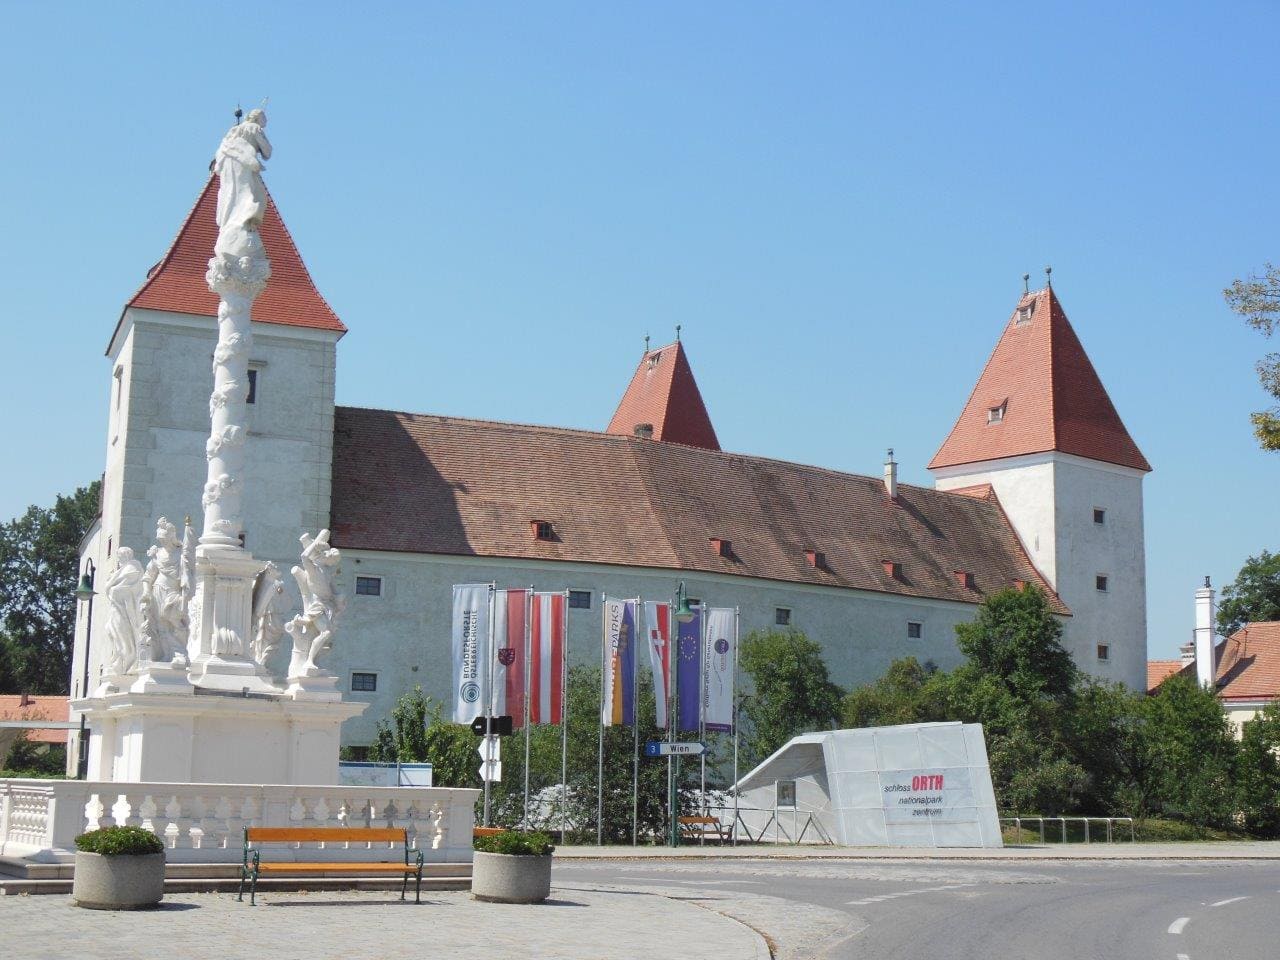 Chateau de Orth an der Donau